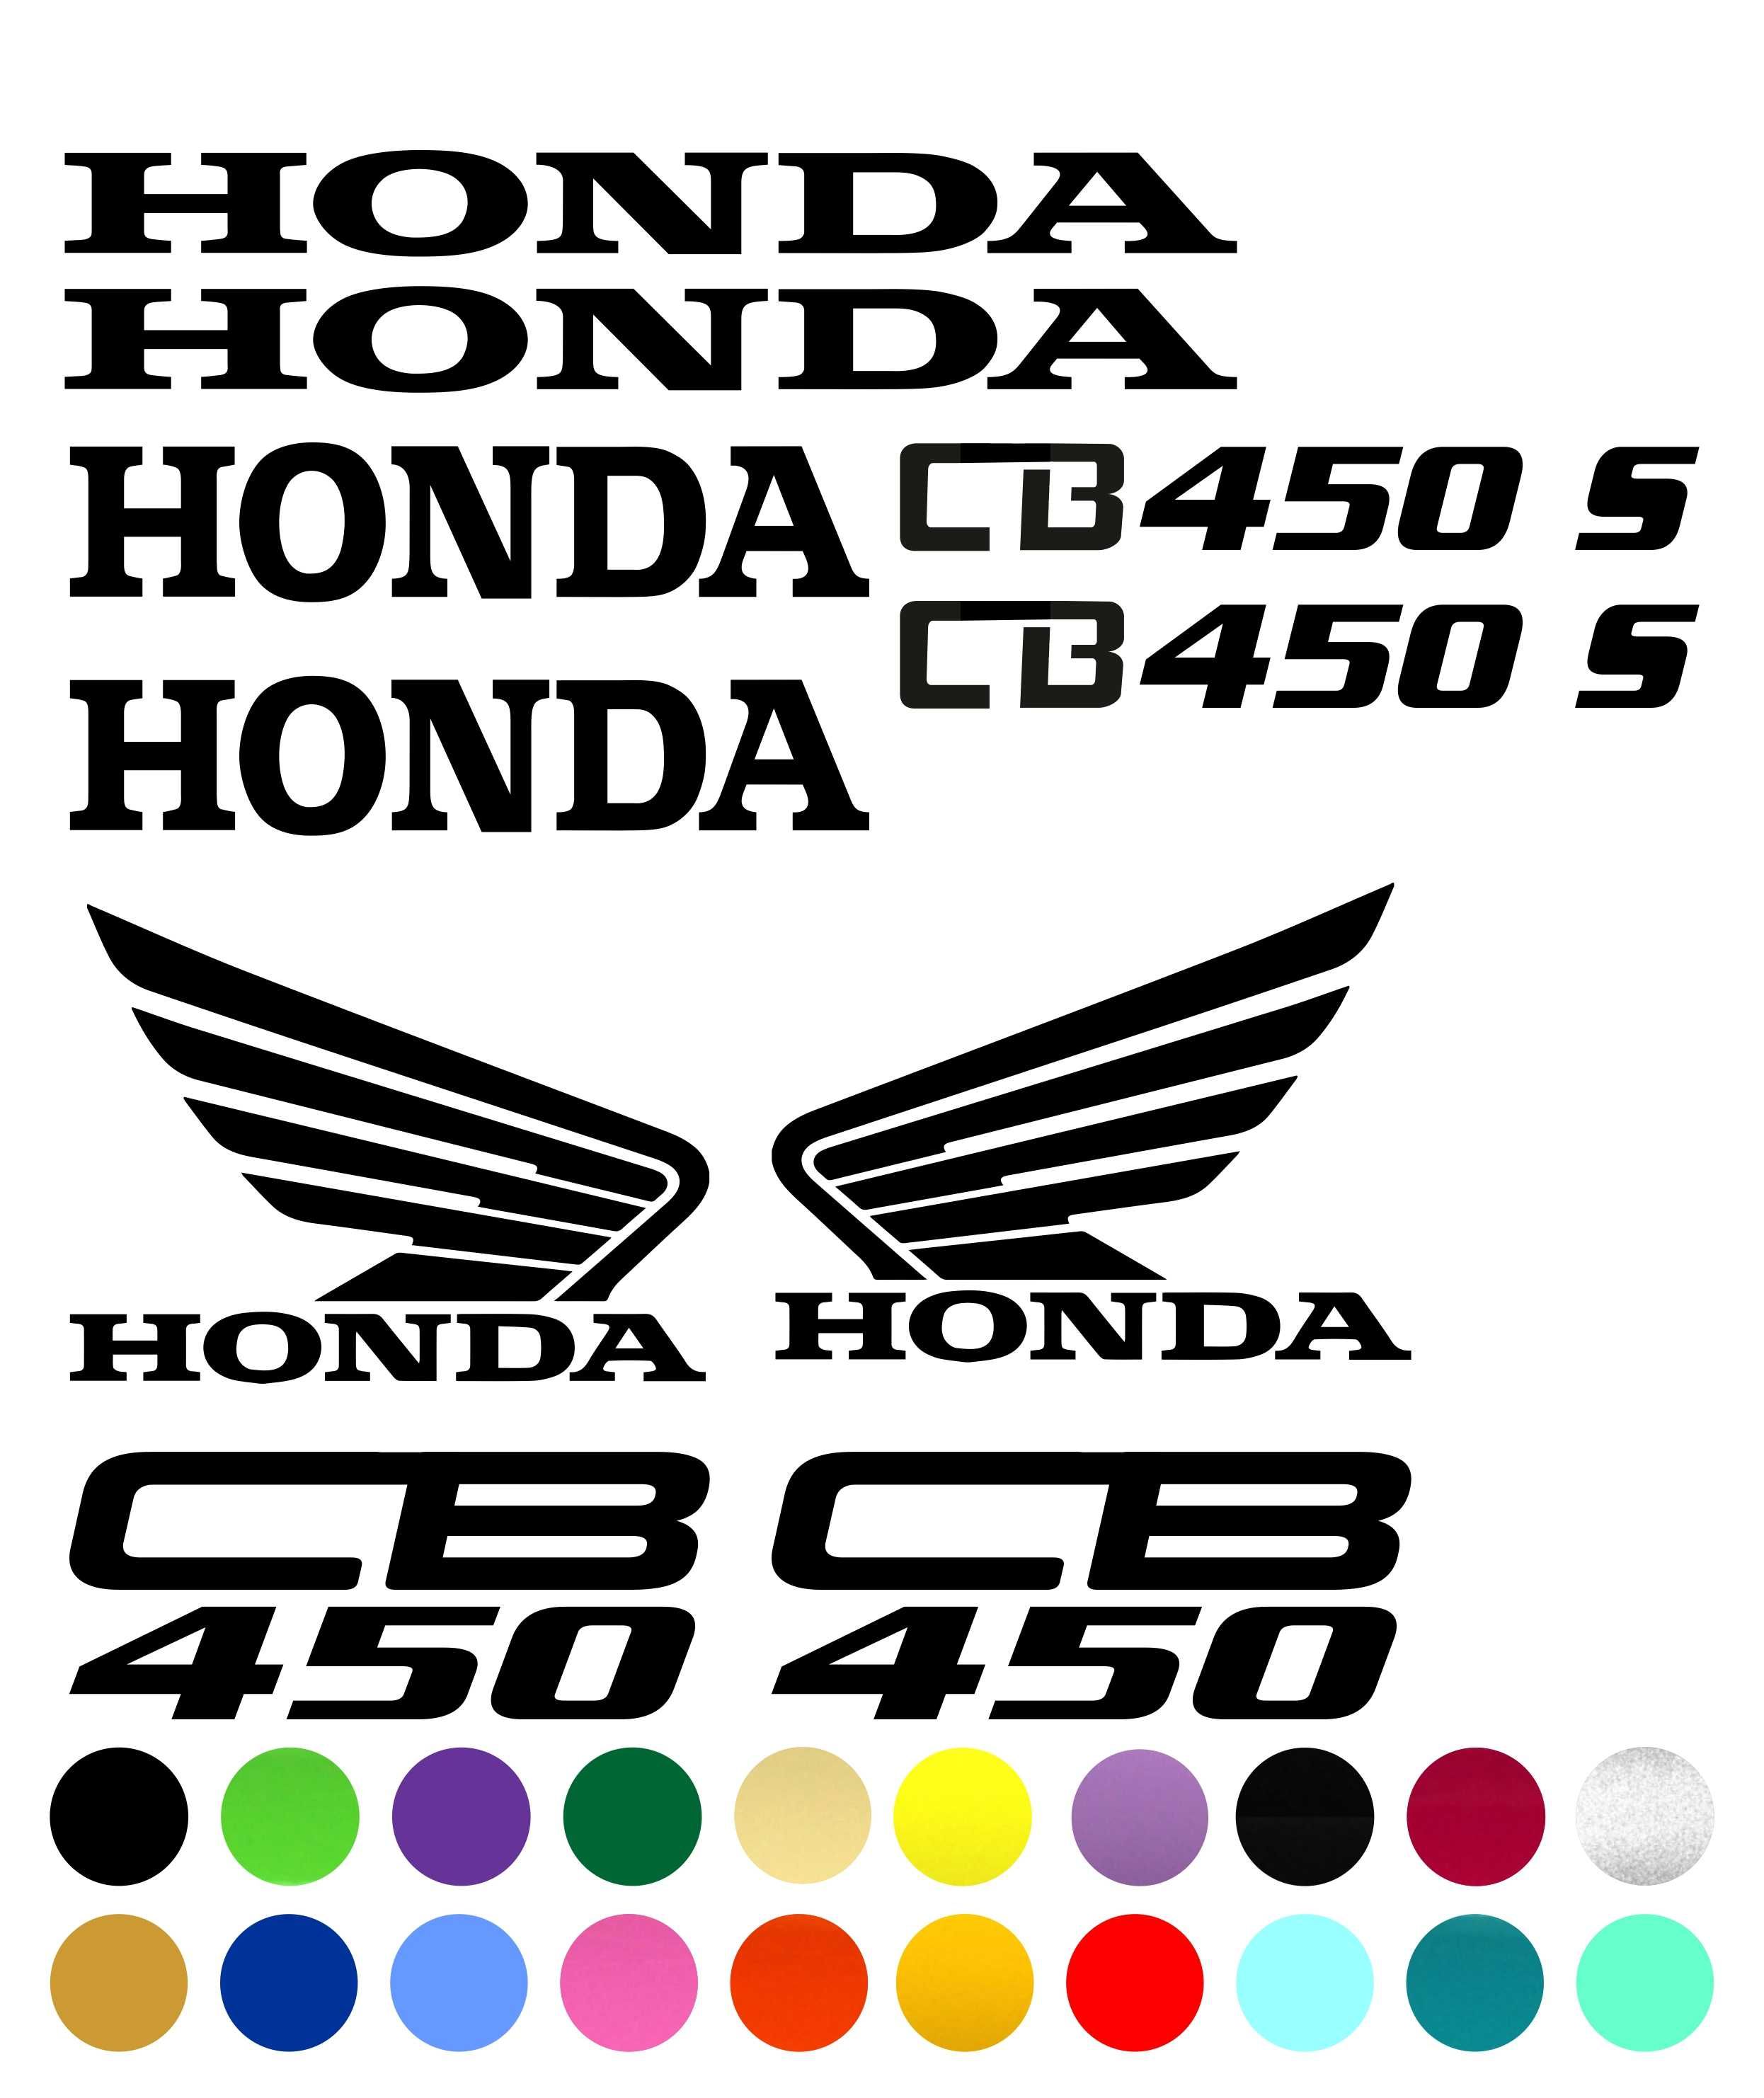 Naklejki Zestaw Honda 600CBR 900RR 929 F4i 125R 450S 1000RR Fireblade